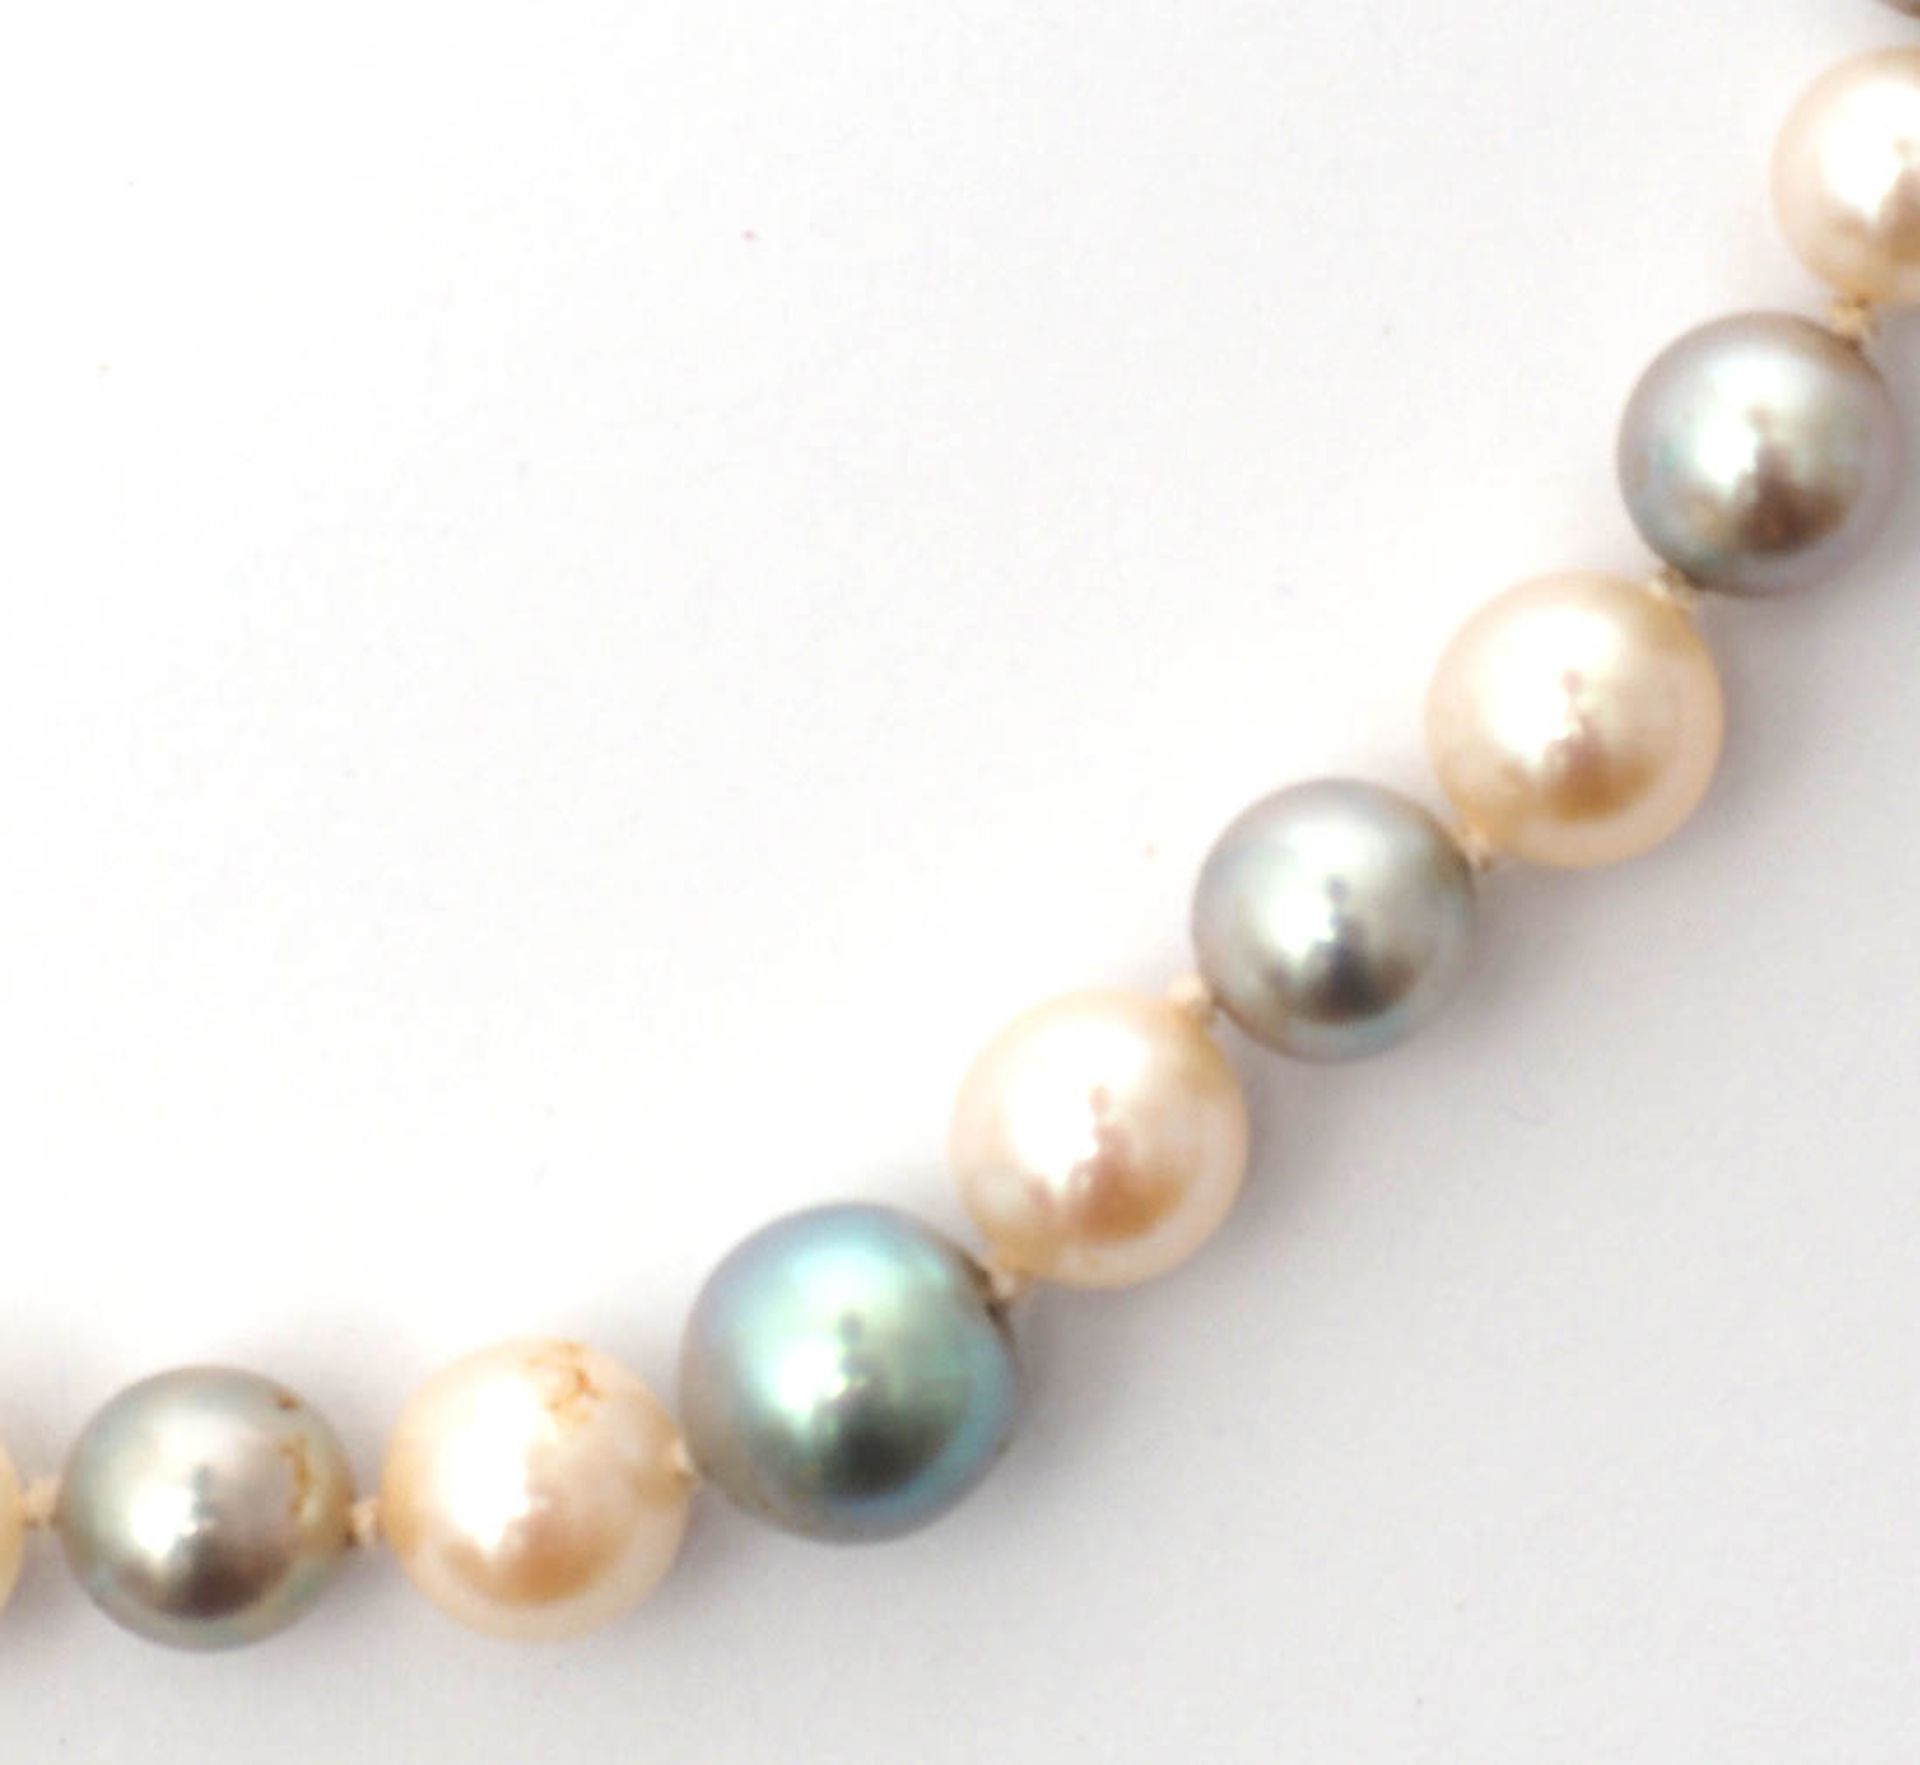 Zuchtperlkette Graue und weiße Perlen von feinem Lüster (Durchm.3-4mm). Kugelförmiges